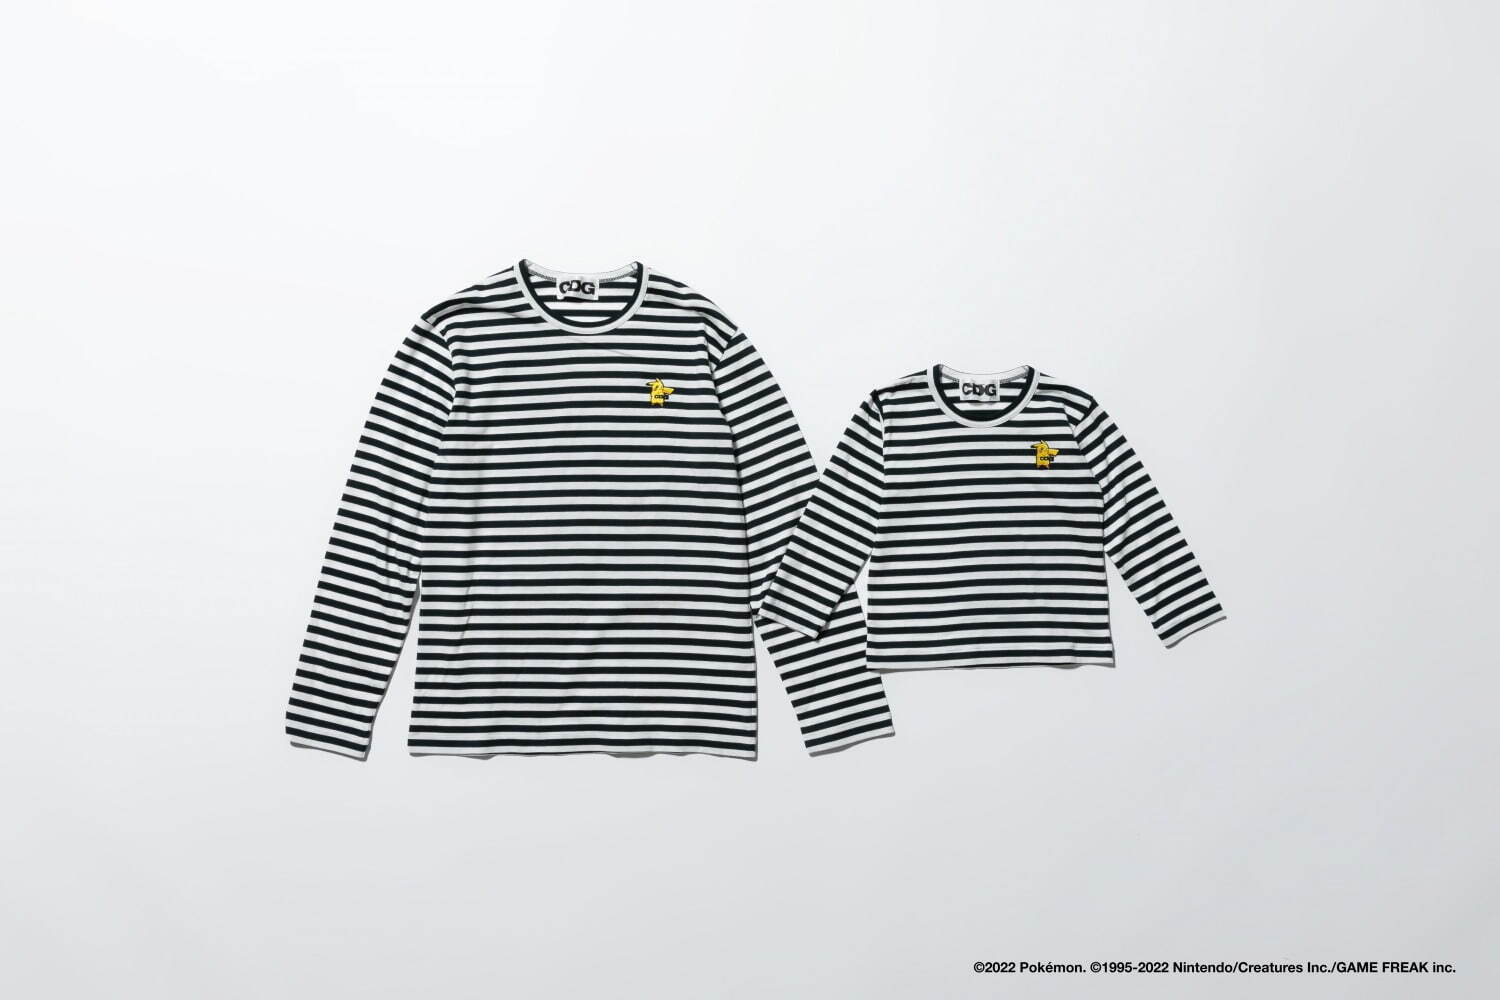 左から)ロングスリーブ Tシャツ 13,200円
キッズ ロングスリーブ Tシャツ 8,250円